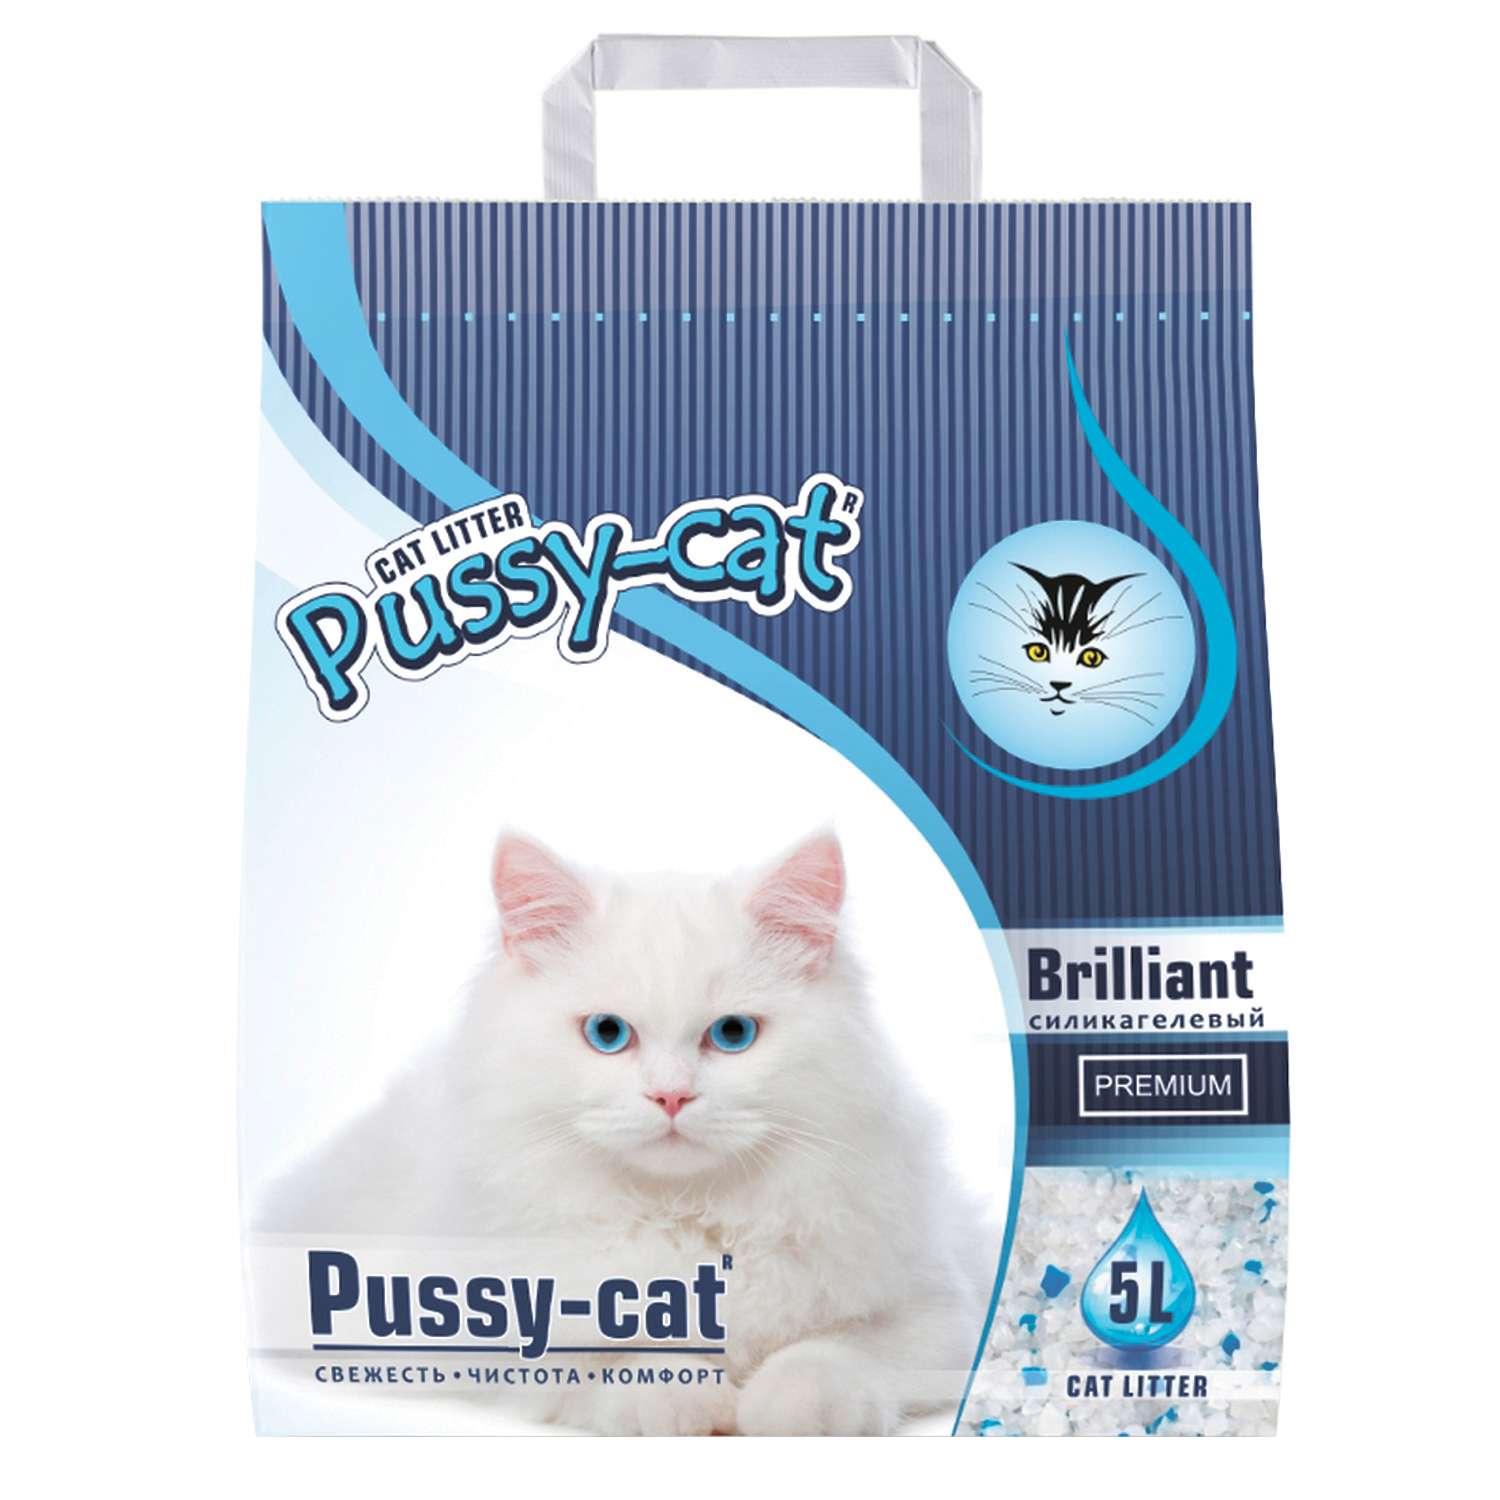 Наполнитель для кошек Pussy Cat Premium Brilliant силикагелевый 5 л - фото 1